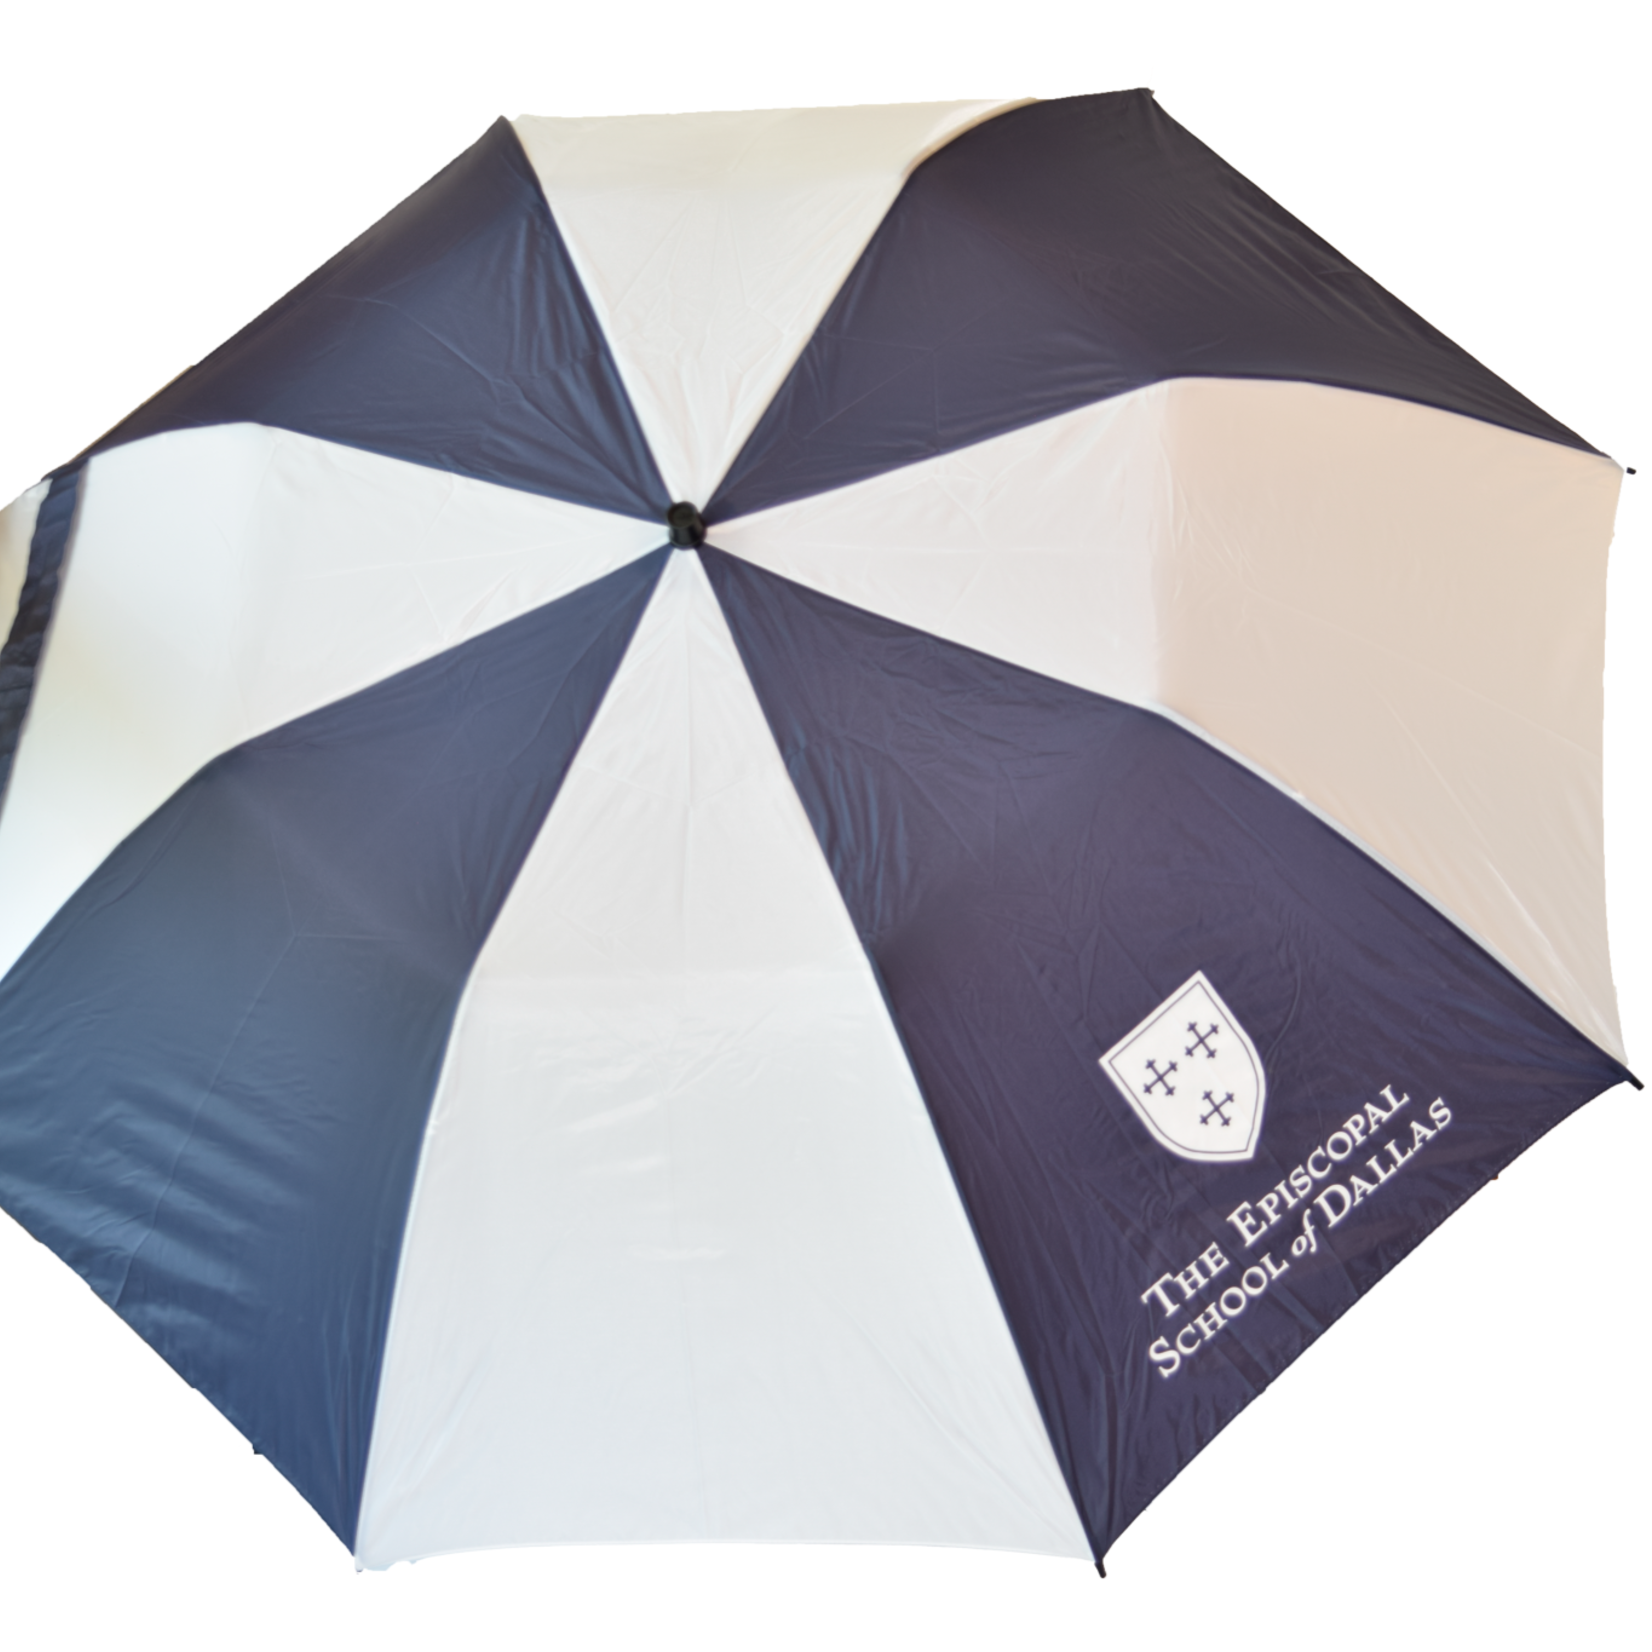 Storm Duds Golf Umbrella NVY/WHT #6800